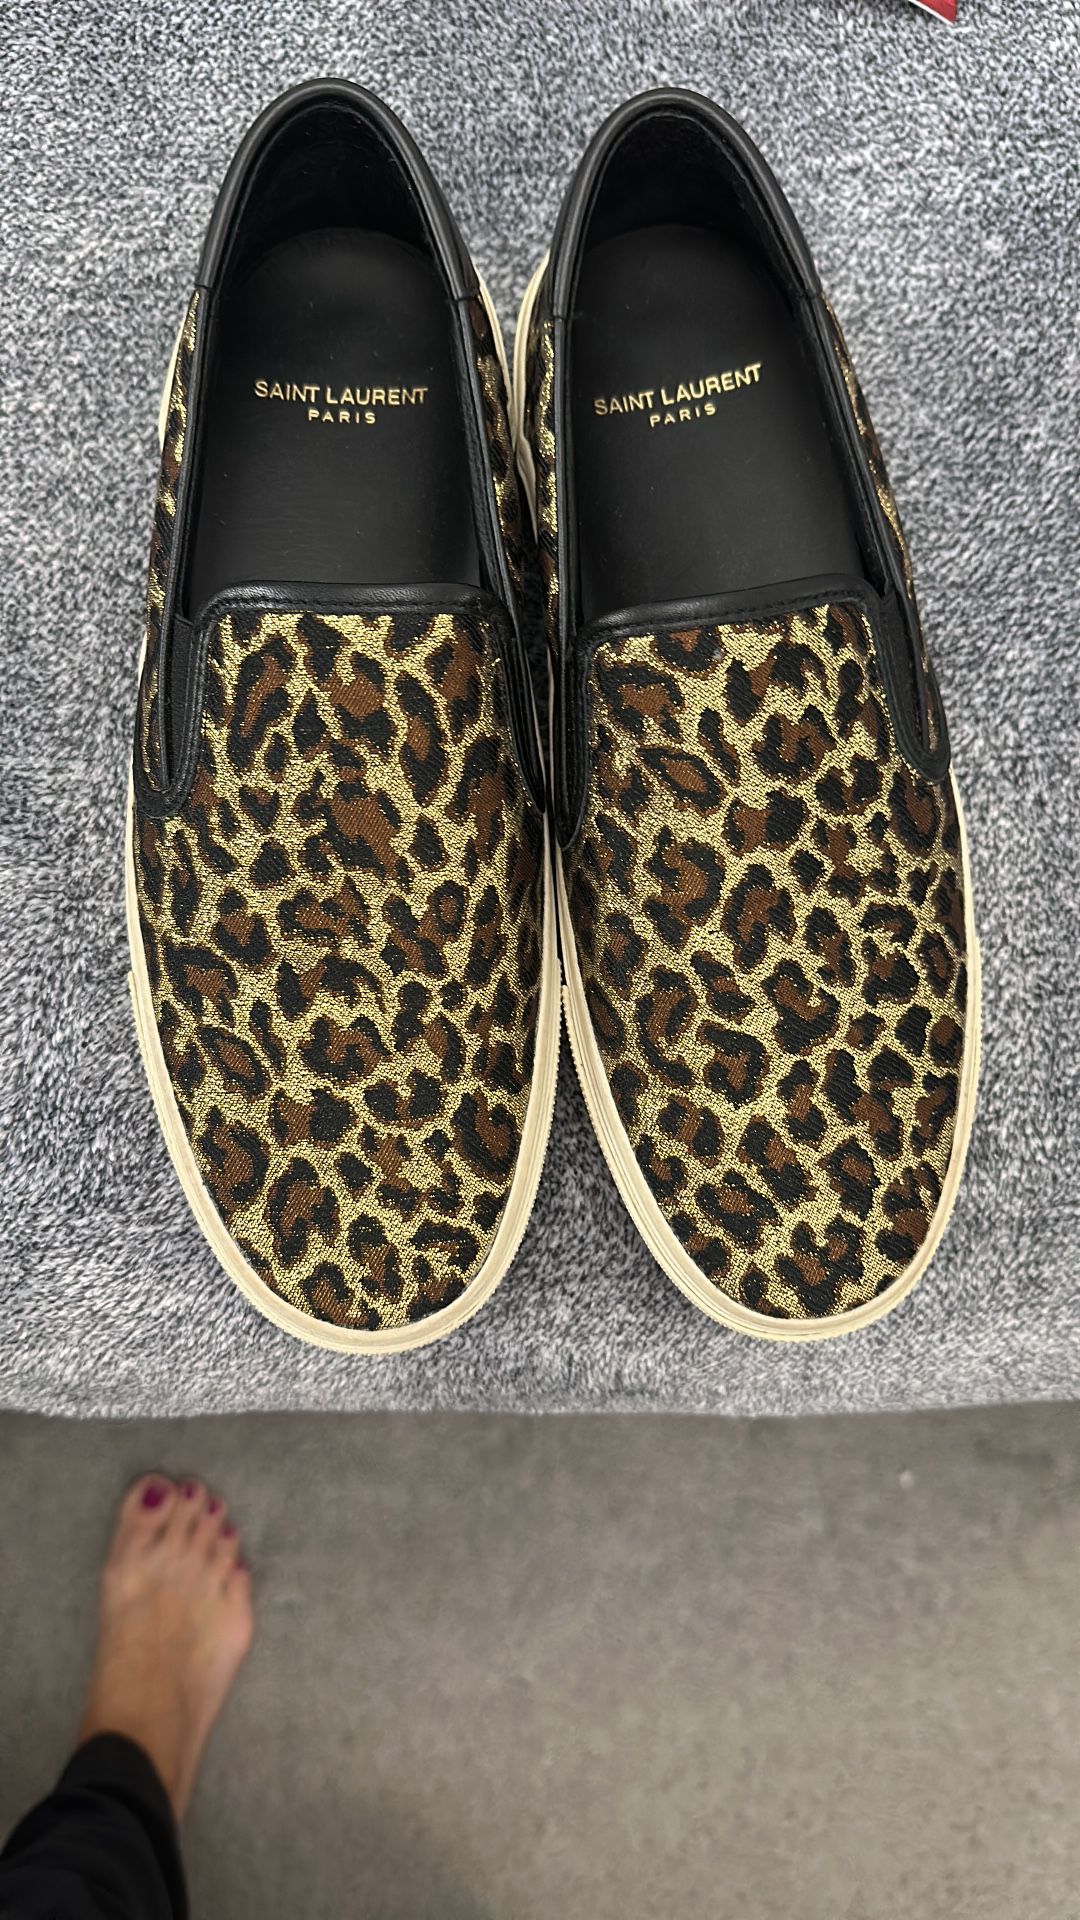 Yves Saint Laurent Slip On Sneakers Size 39